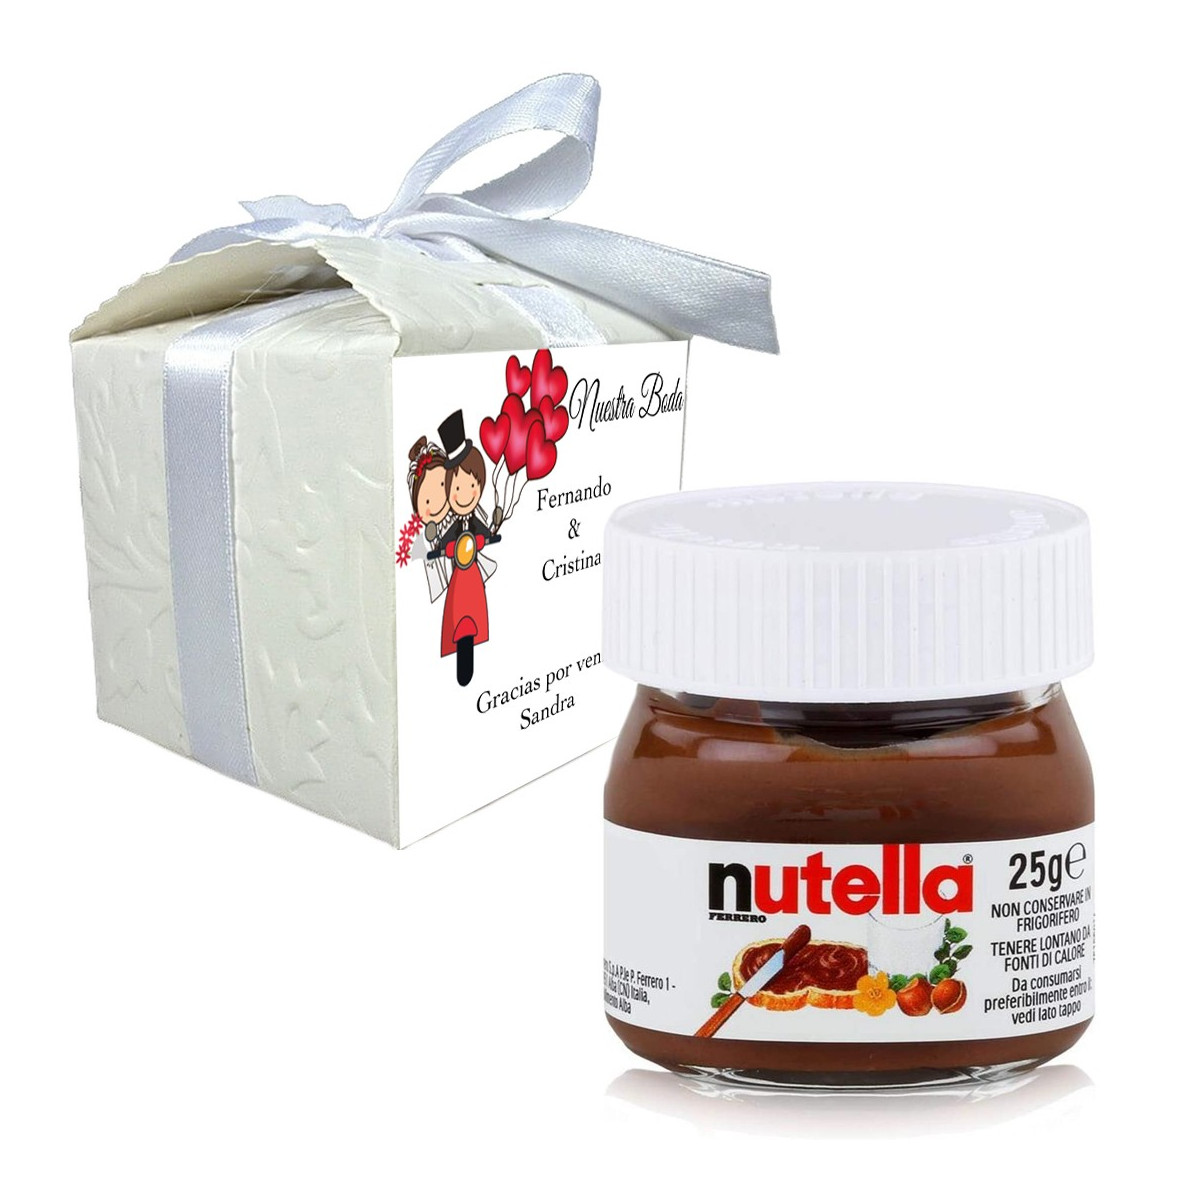 Nutella em uma caixa de presente personalizada com nome do convidado e frase de agradecimento